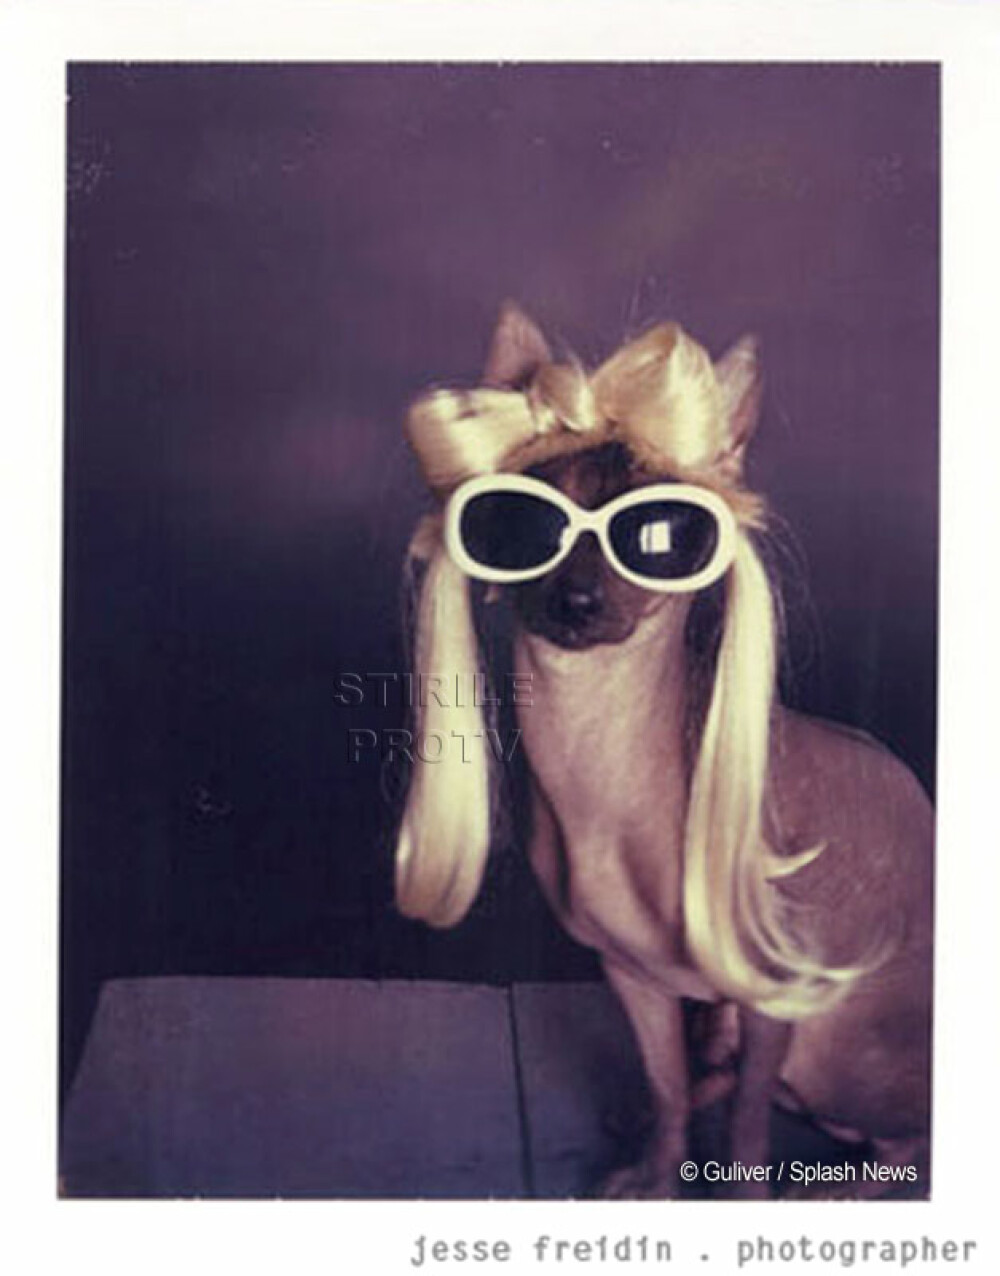 Doggie GaGa! Si cainii adopta stilul Lady GaGa! - Imaginea 5